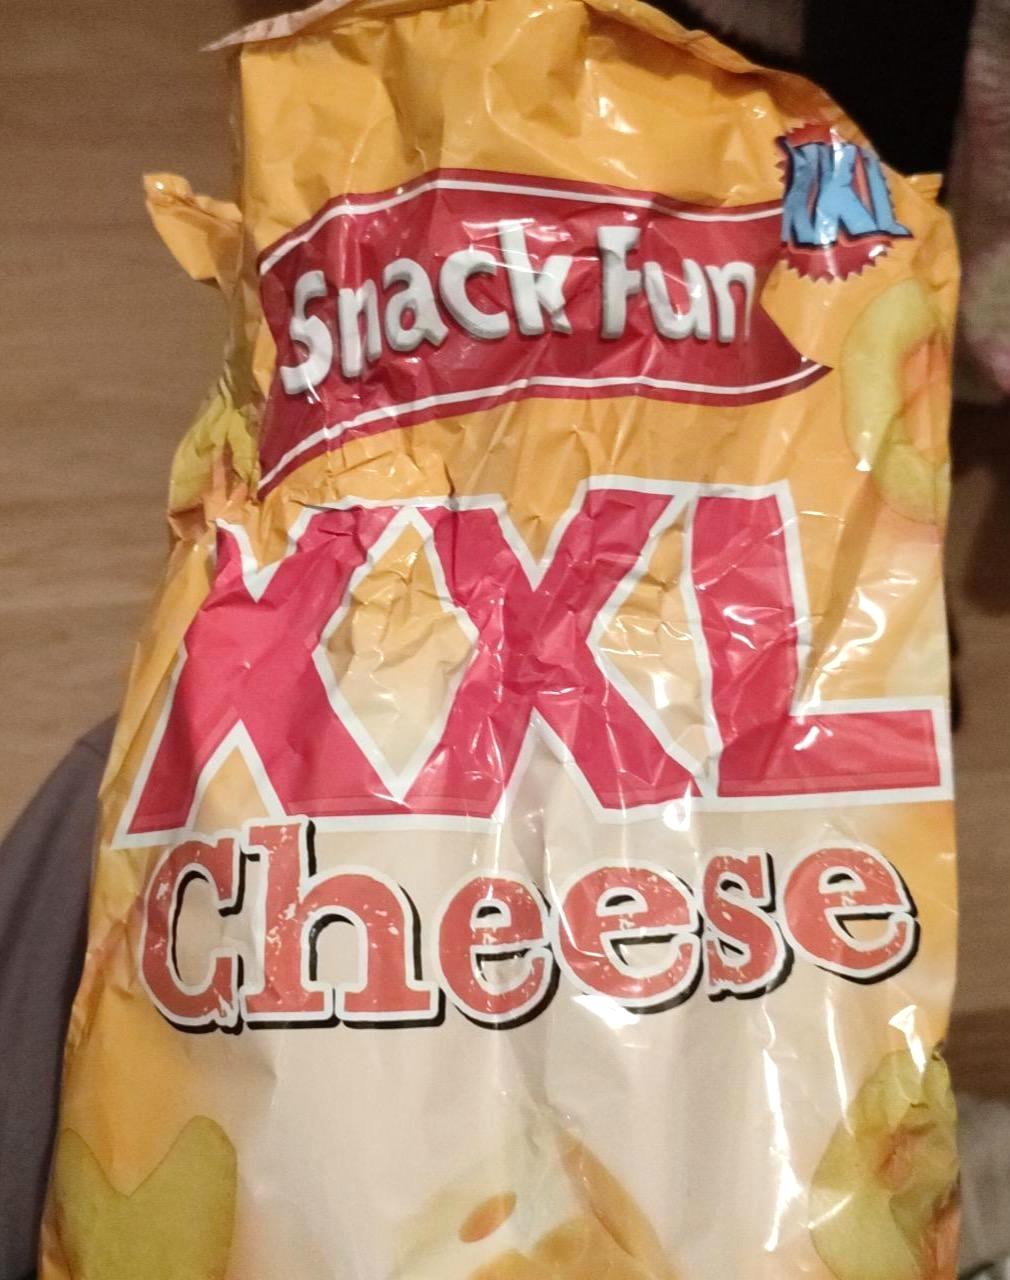 Képek - XXL cheese Snack fun